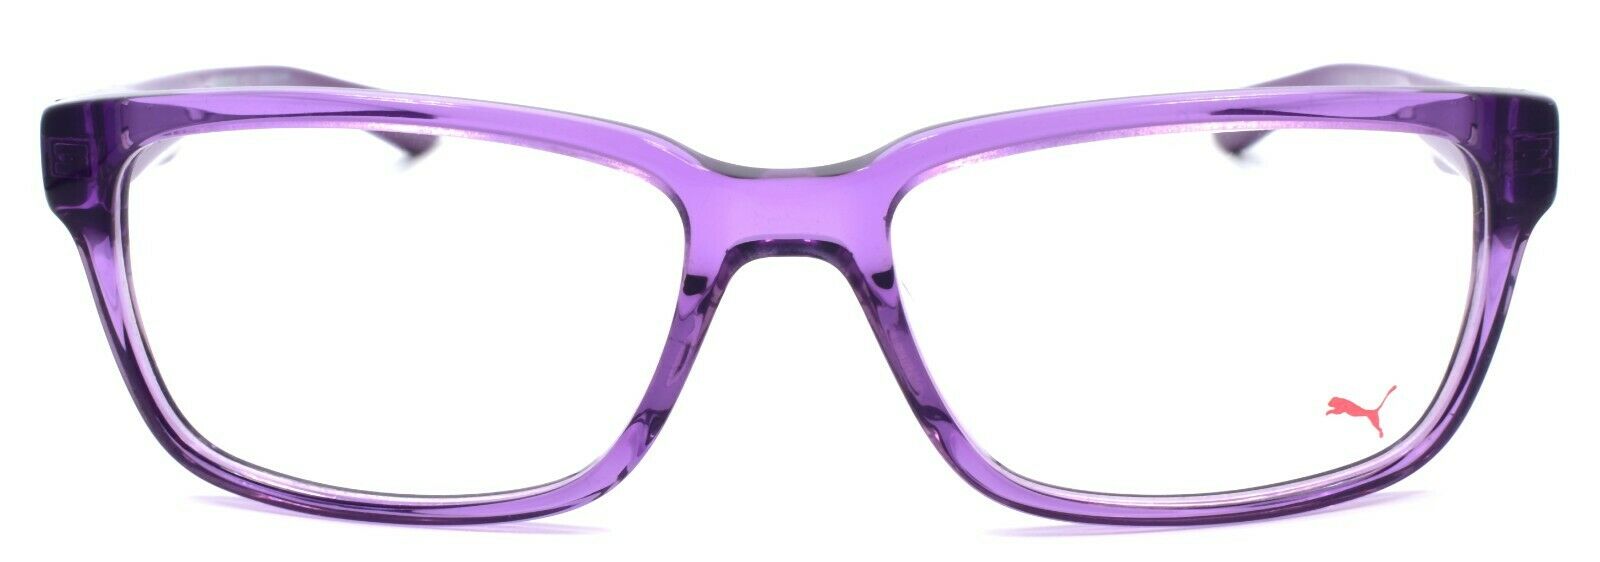 2-PUMA PU0068O 009 Men's Eyeglasses Frames 54-17-140 Violet Crystal-889652033143-IKSpecs